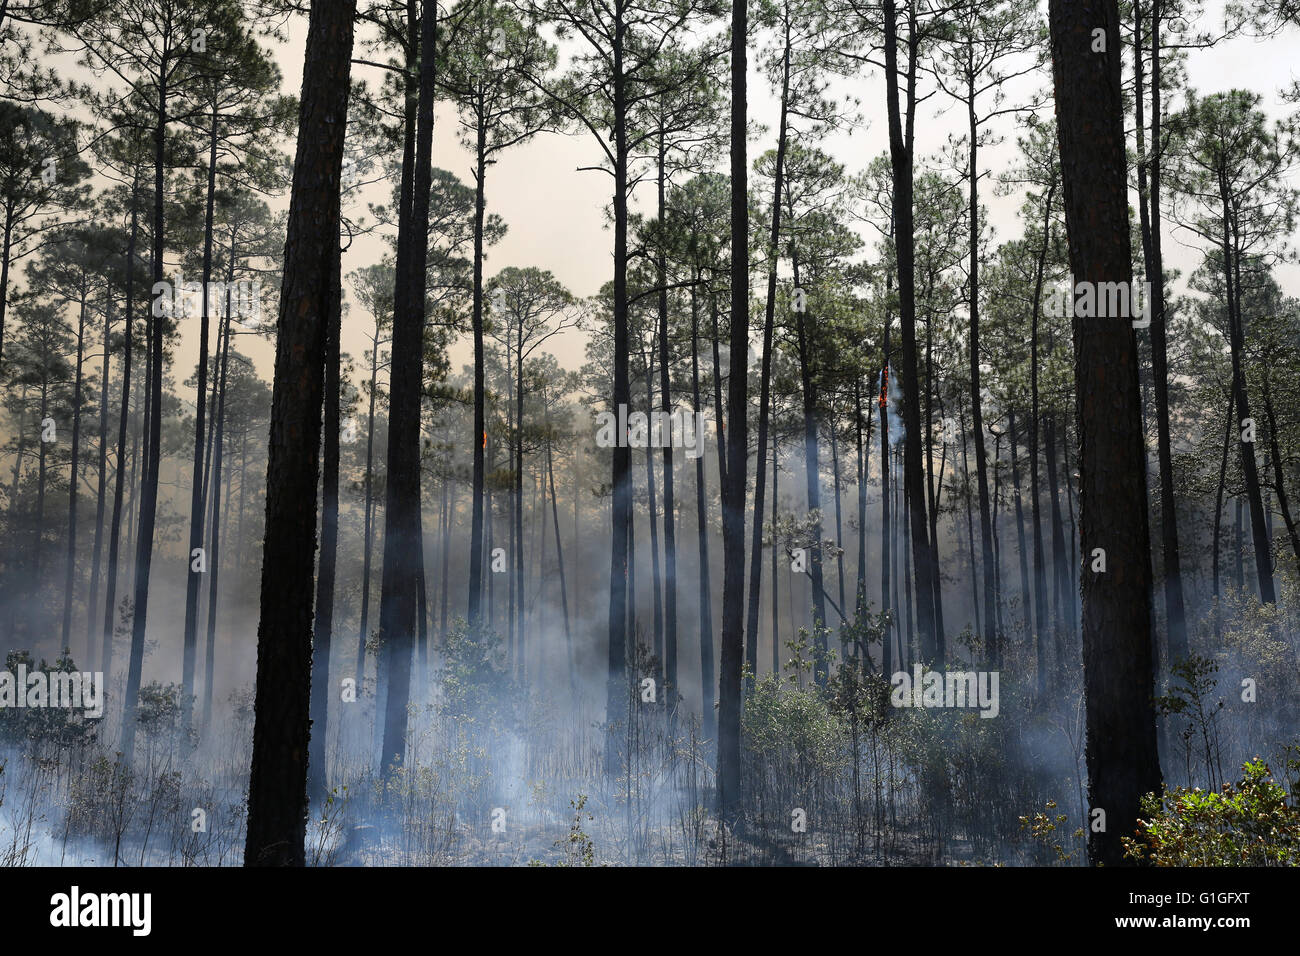 Suite du brûlage dirigé, forêt Longleaf pine (Pinus palustris) sud-est des États-Unis d'Amérique Banque D'Images